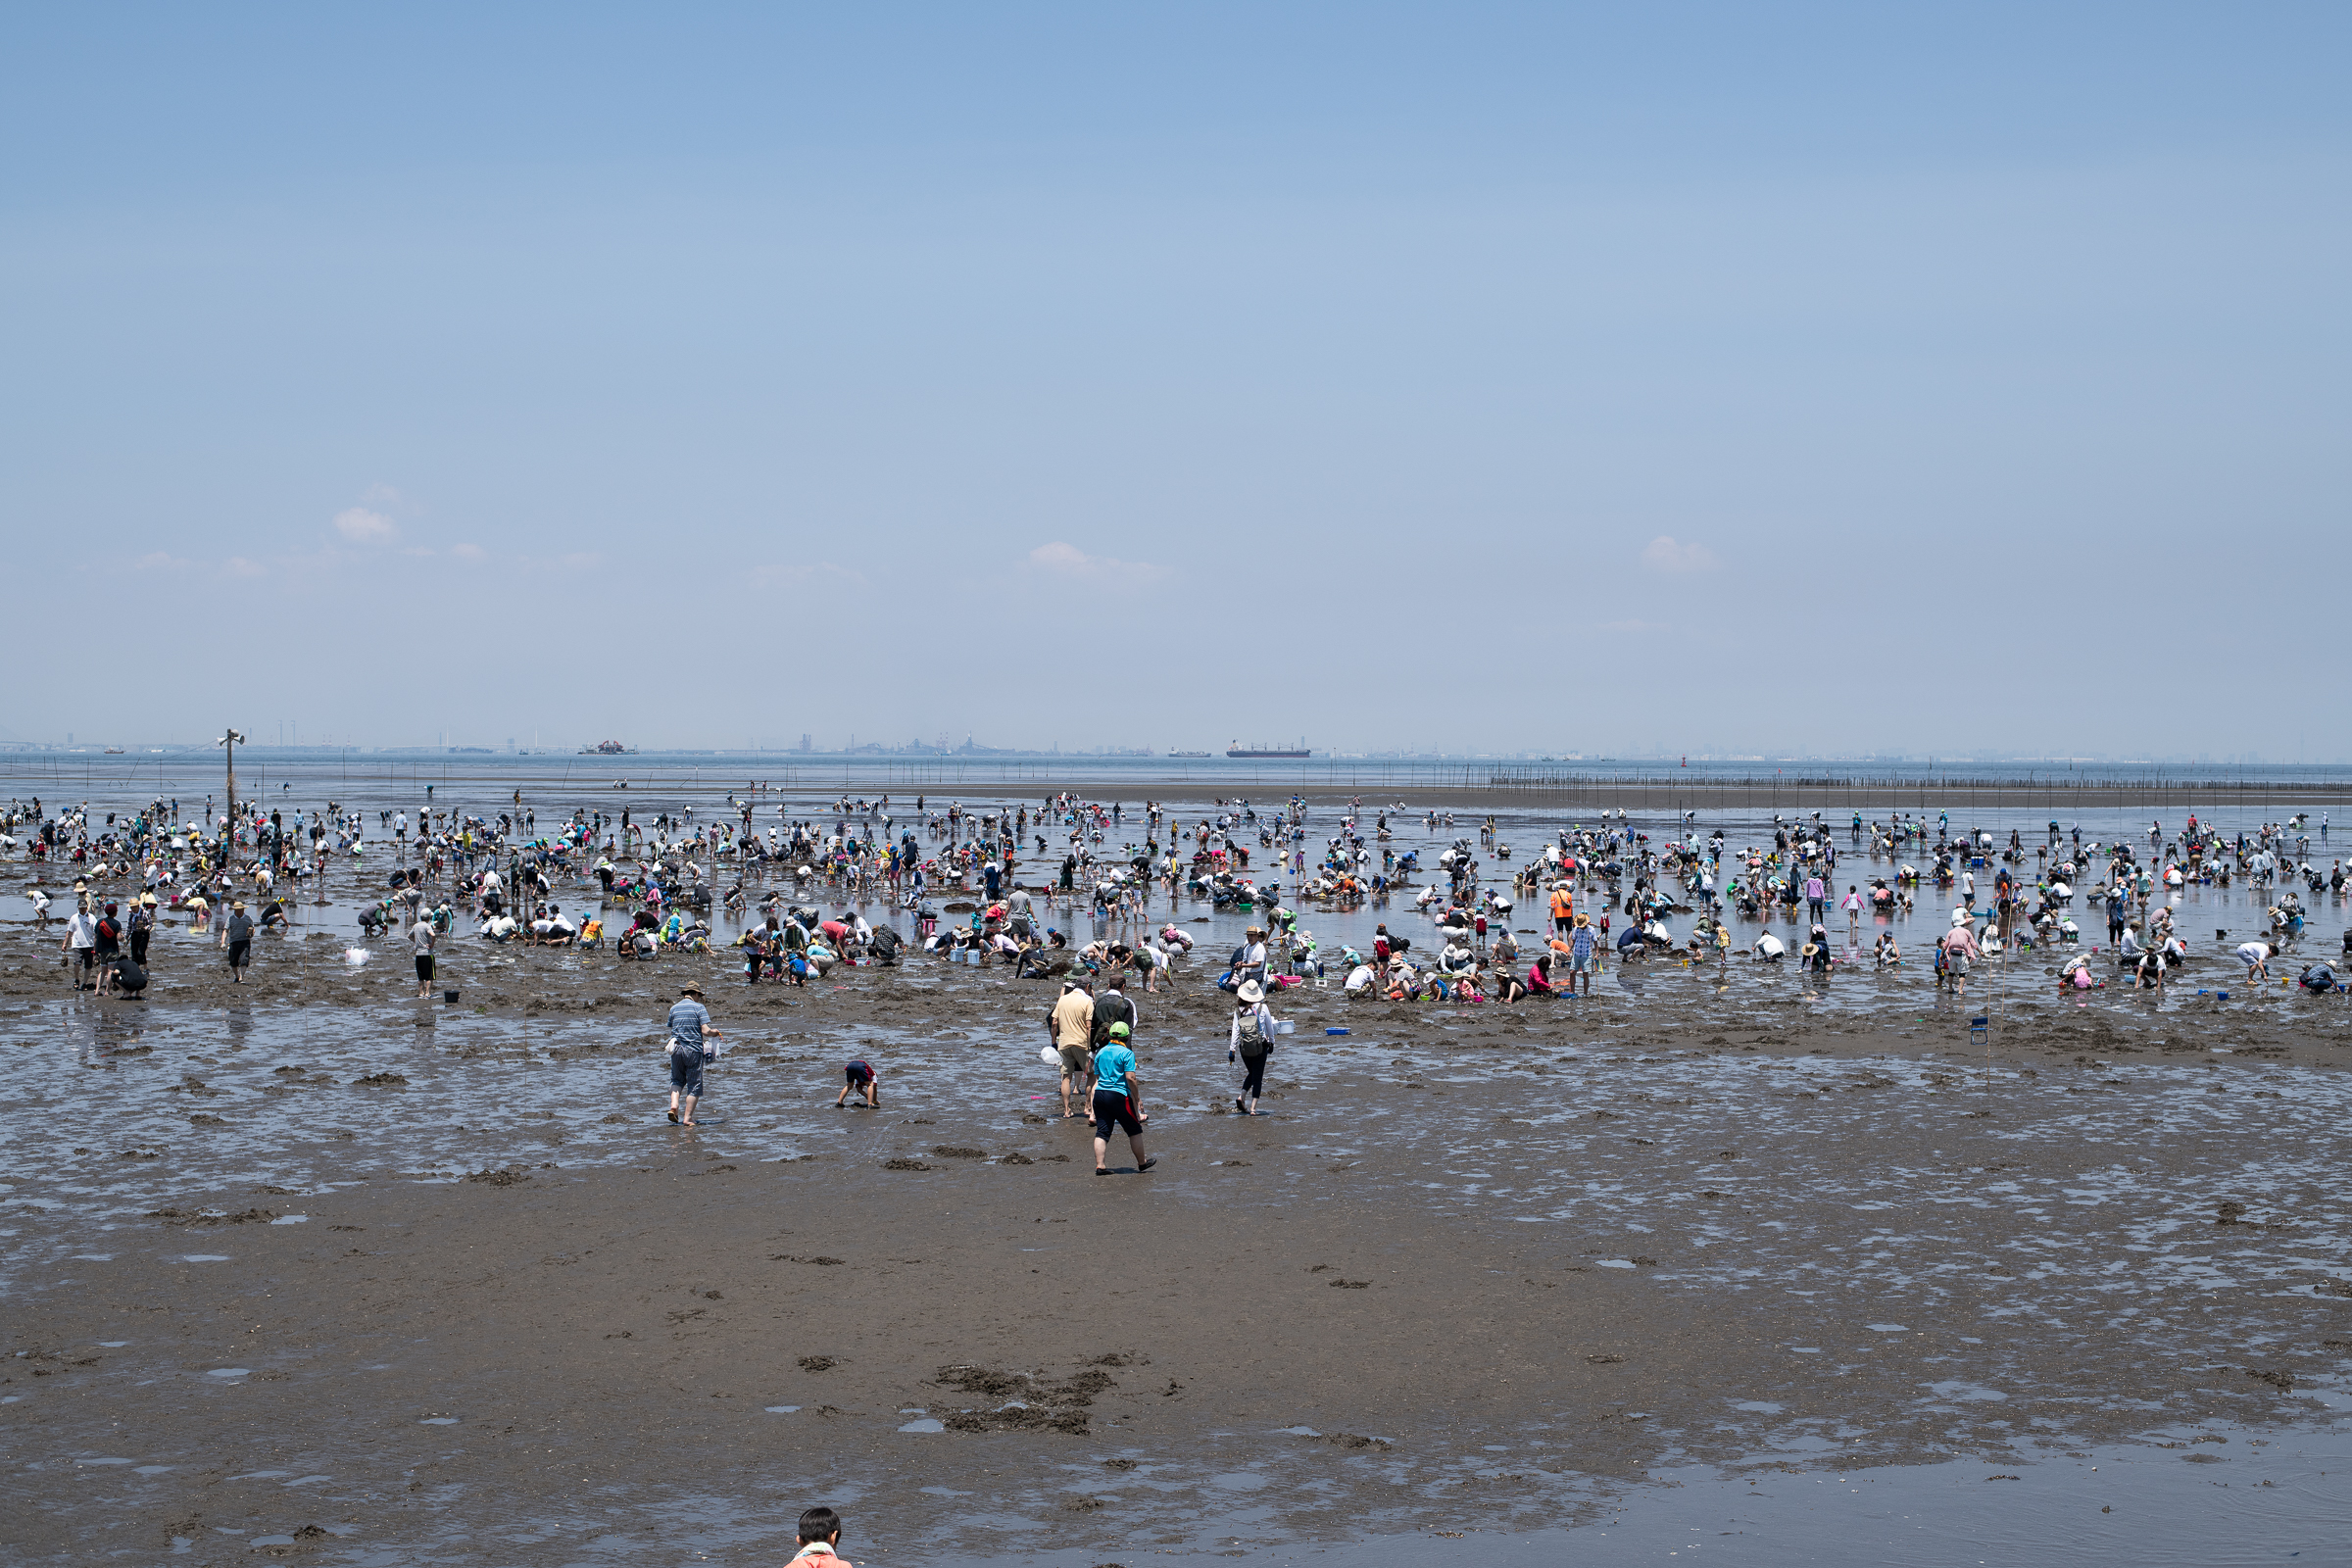 훗쯔해안의 조개캐기 체험장. 수천명의 가족 단위 관광객들이 조개를 캐는 모습이 장관이다.